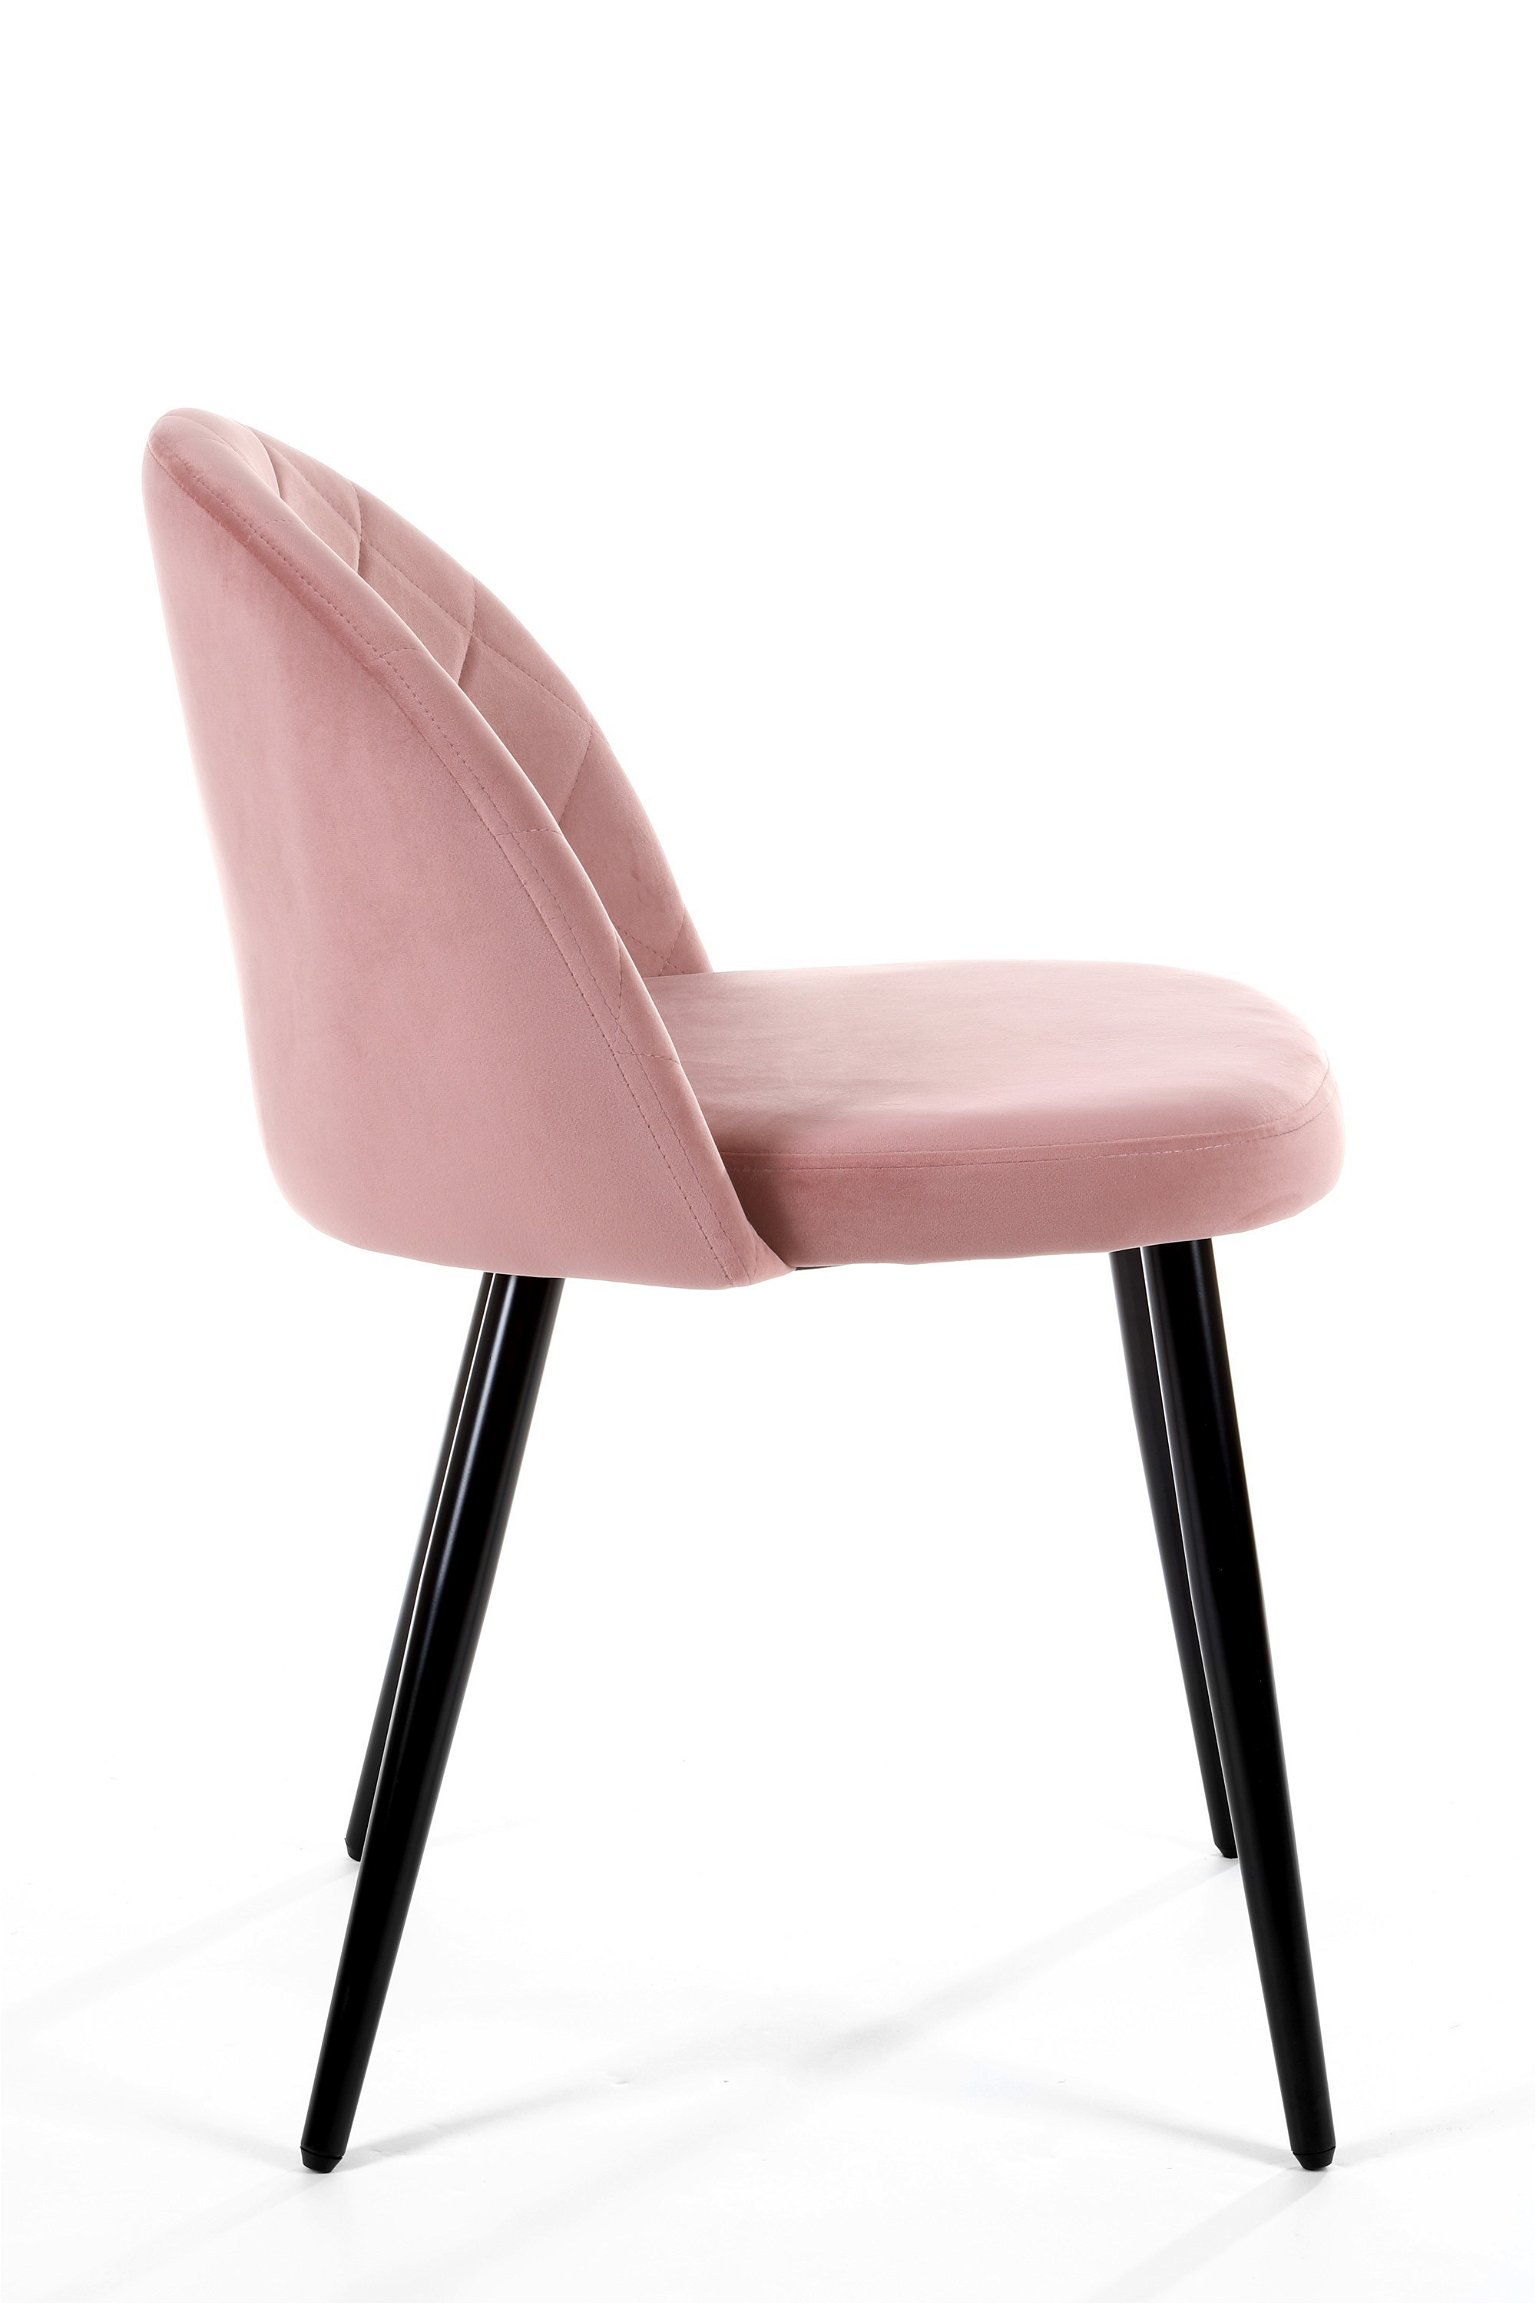 2-ių kėdžių komplektas SJ.077, rožinė - 4